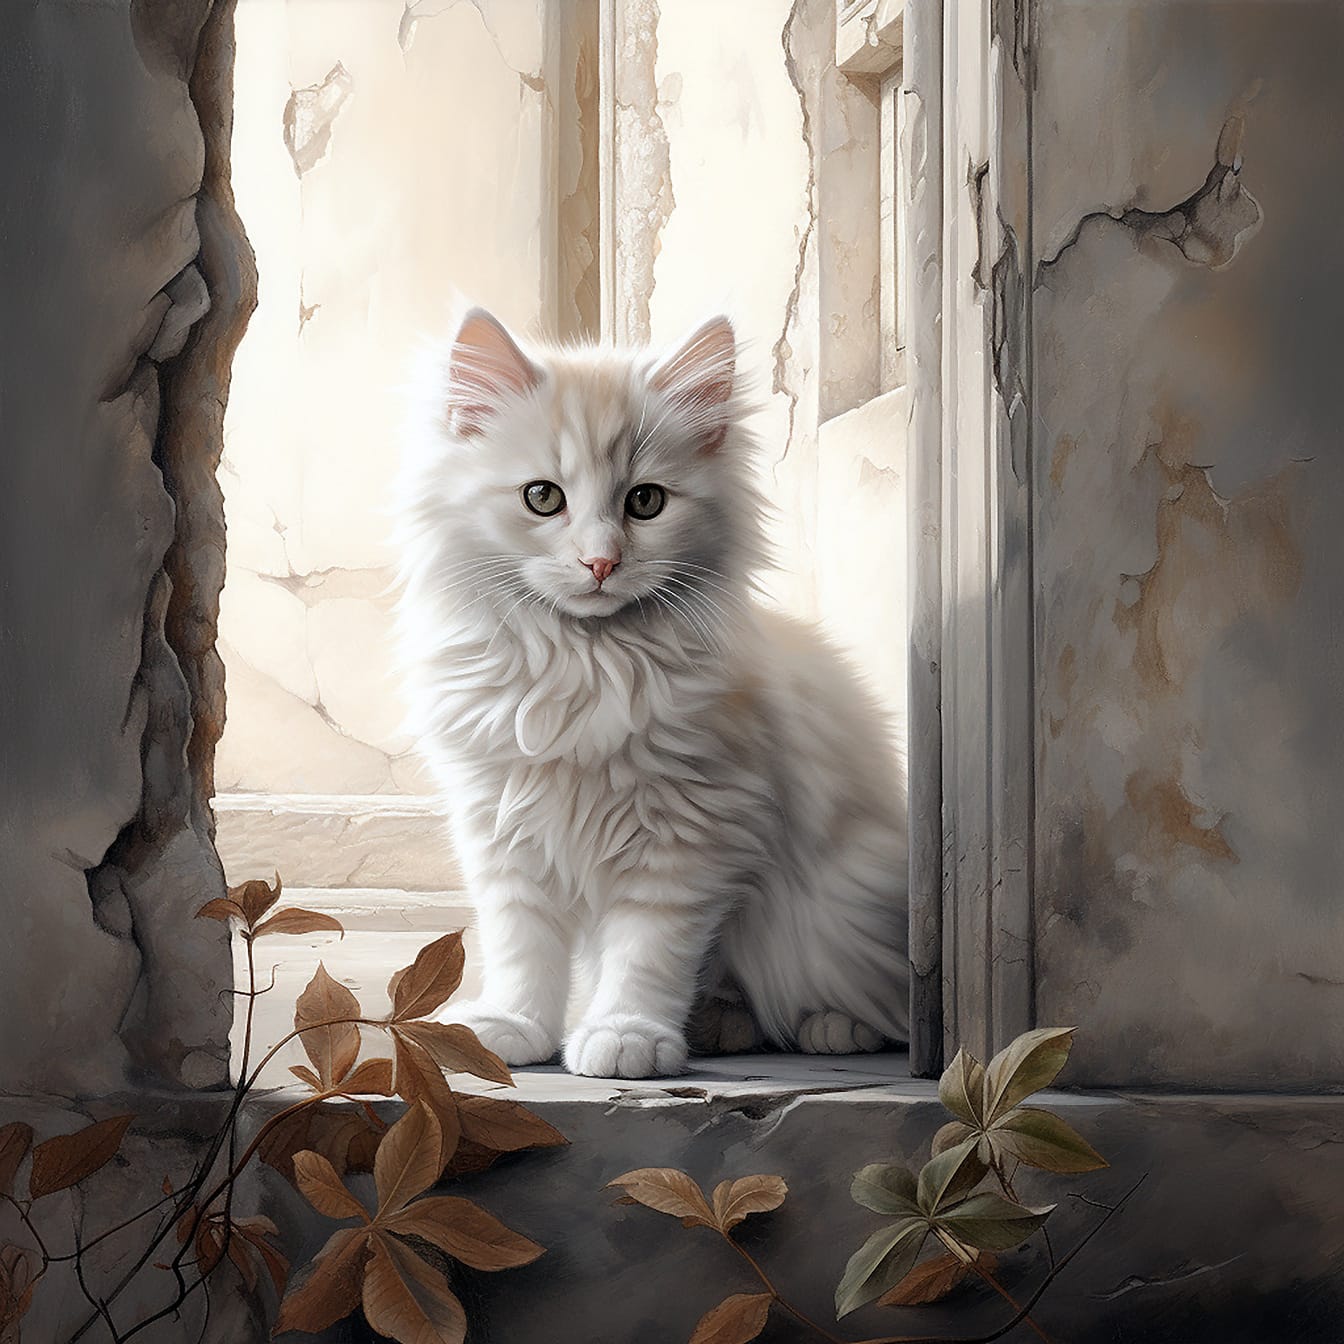 썩어가는 방 그림에 앉아있는 사랑스러운 회색 새끼 고양이